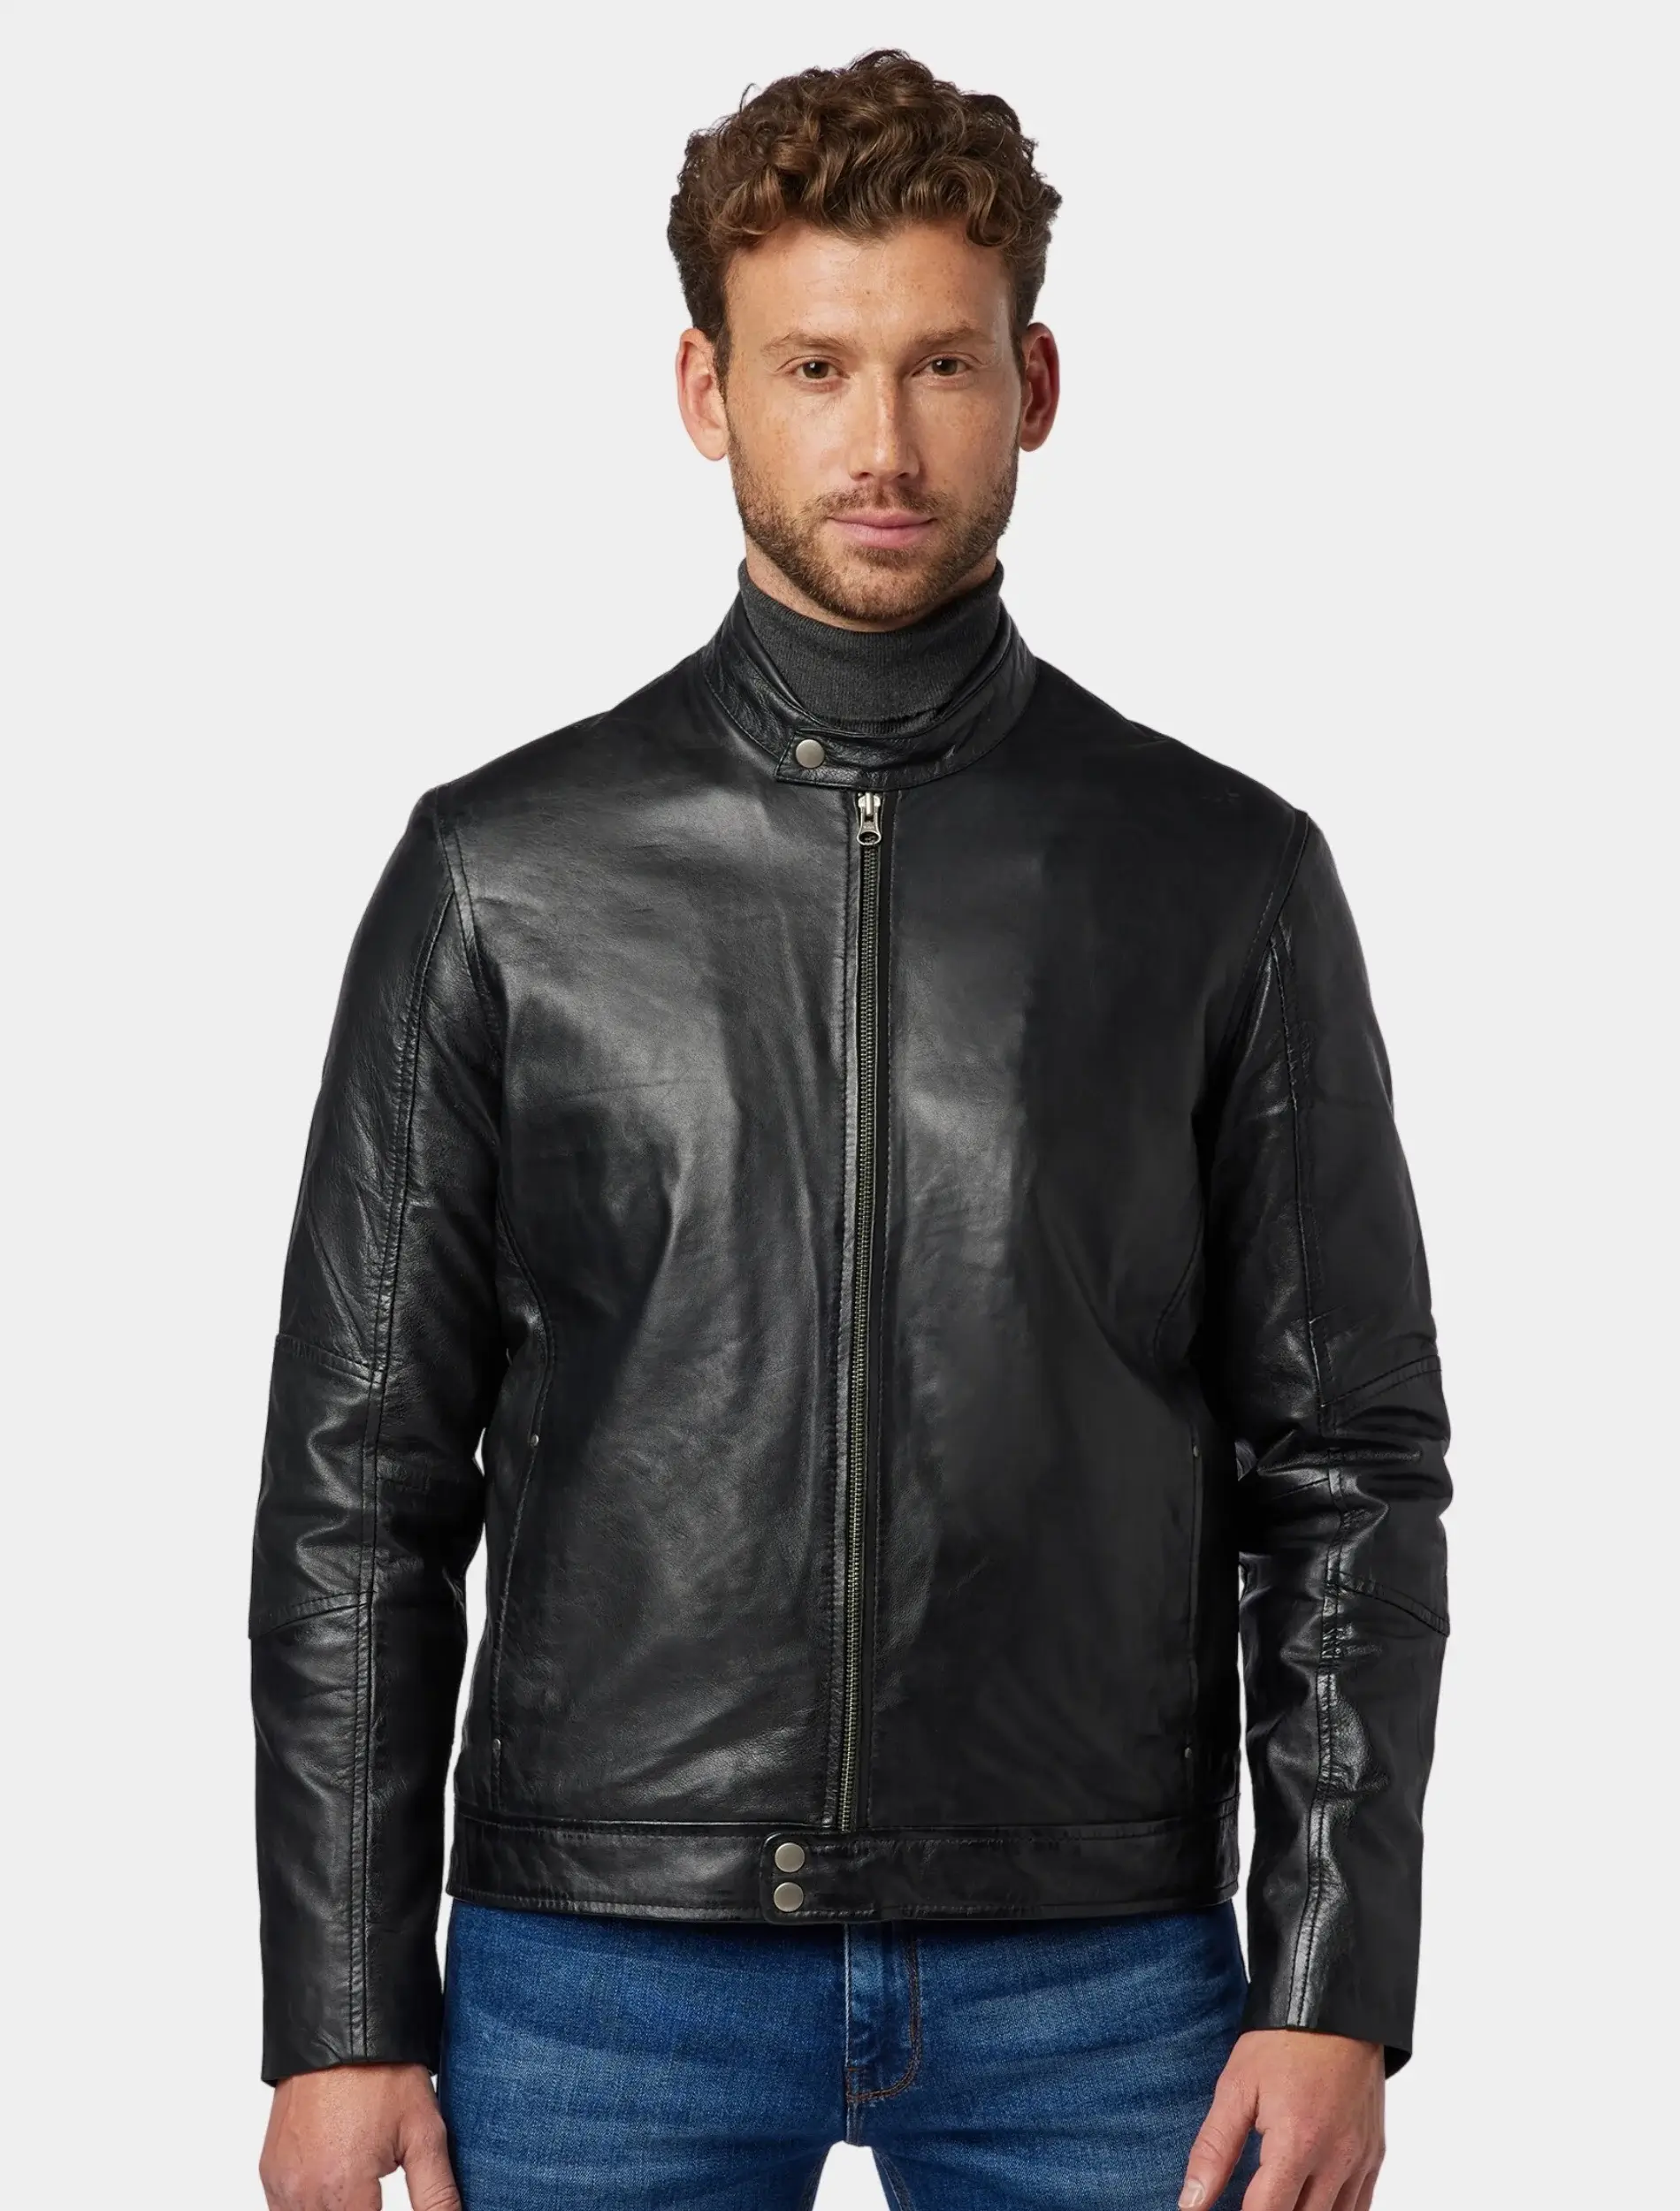 Mens Sleek Black Leather Cafe Racer Jacket